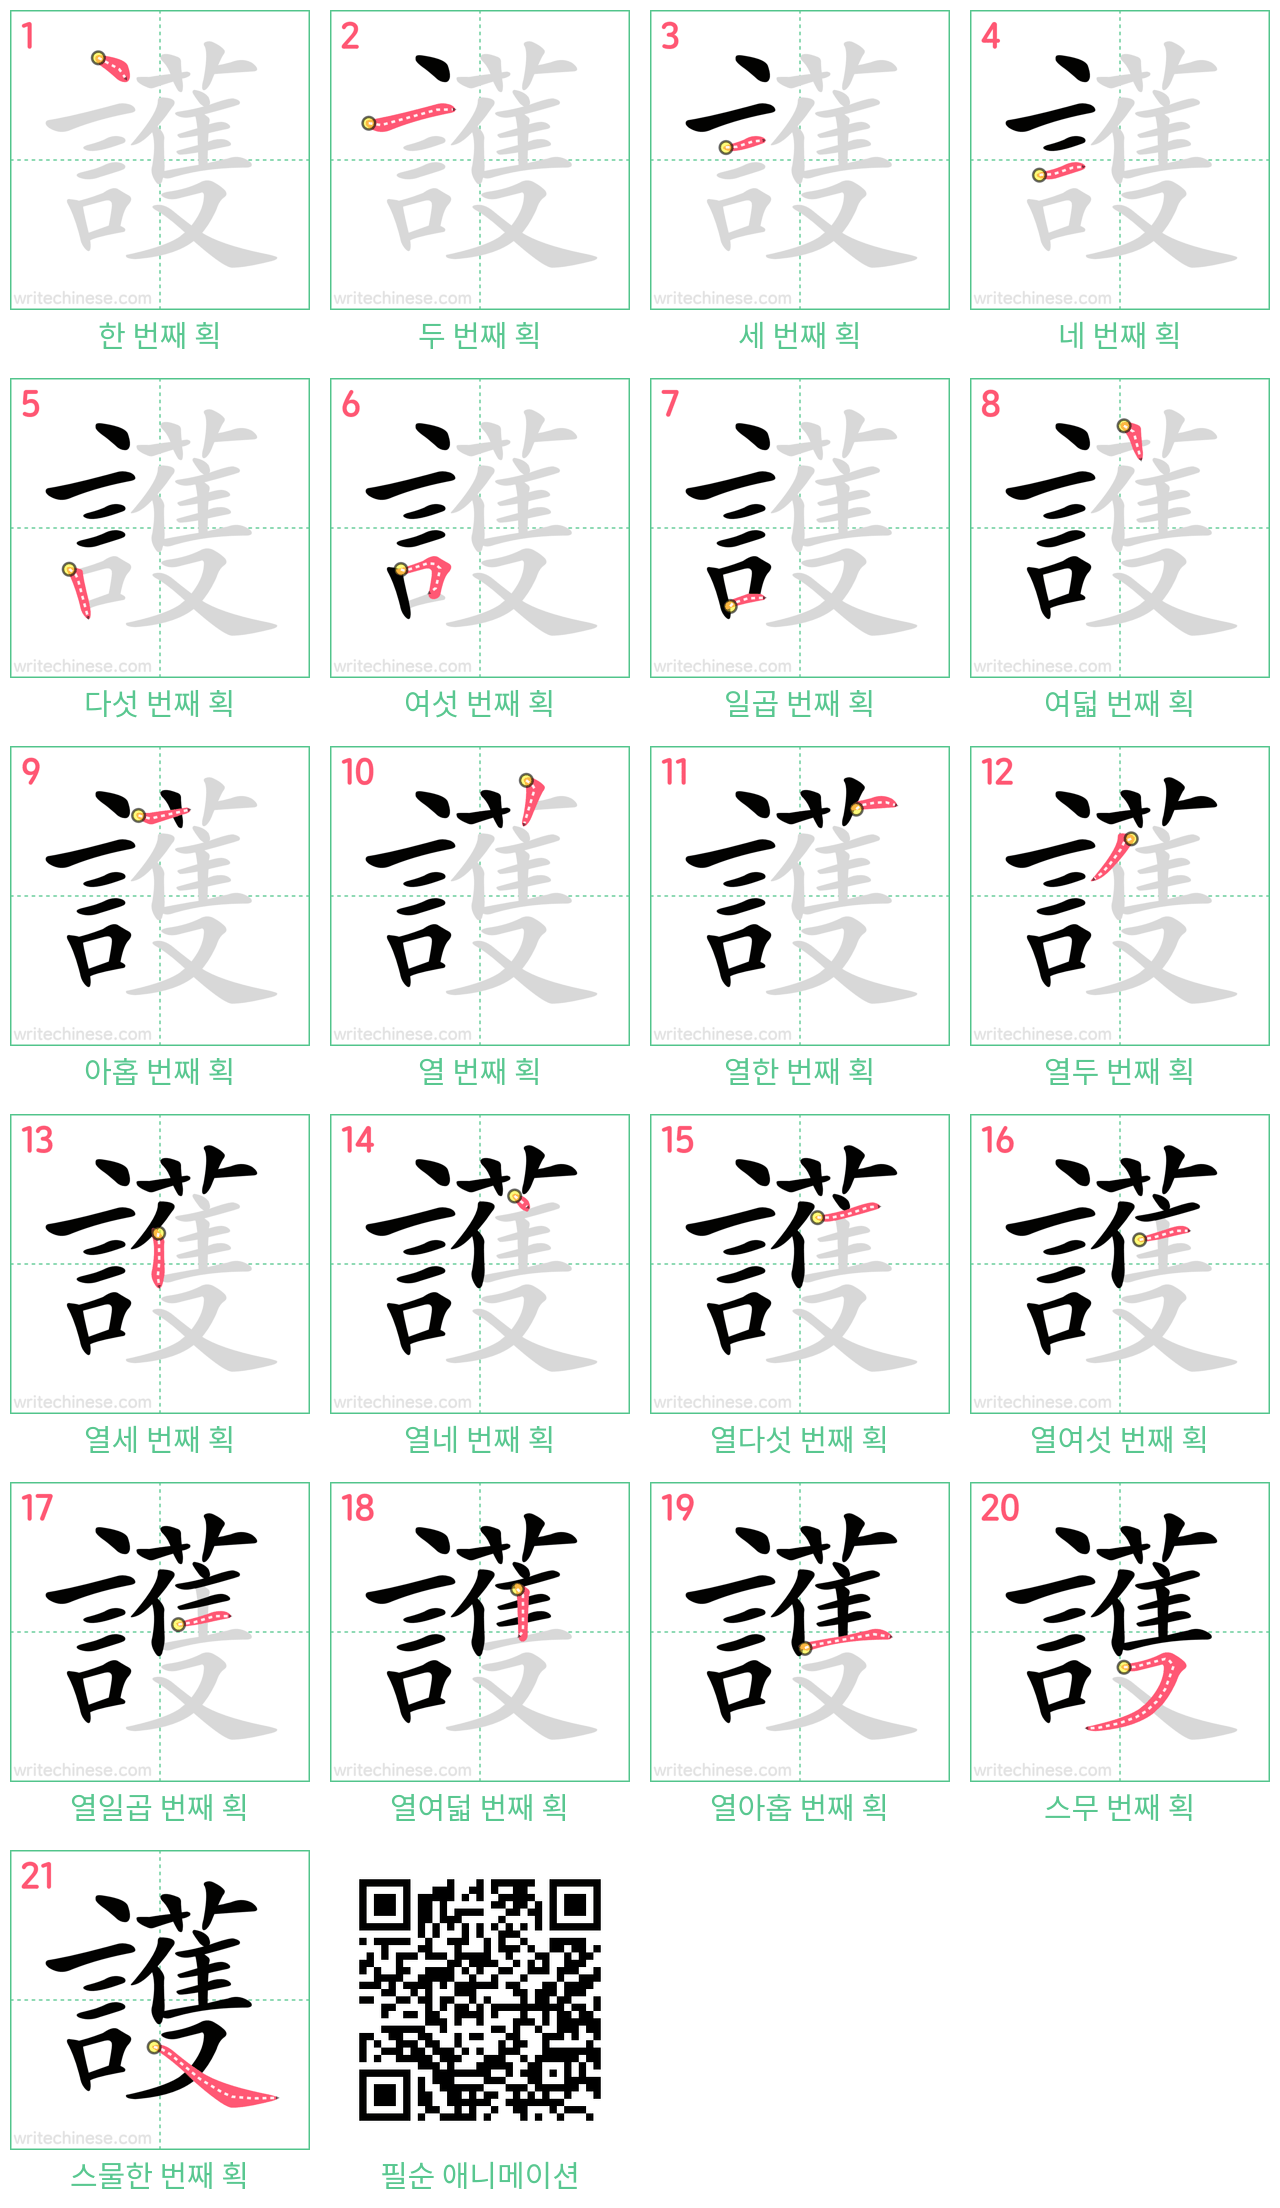 護 step-by-step stroke order diagrams